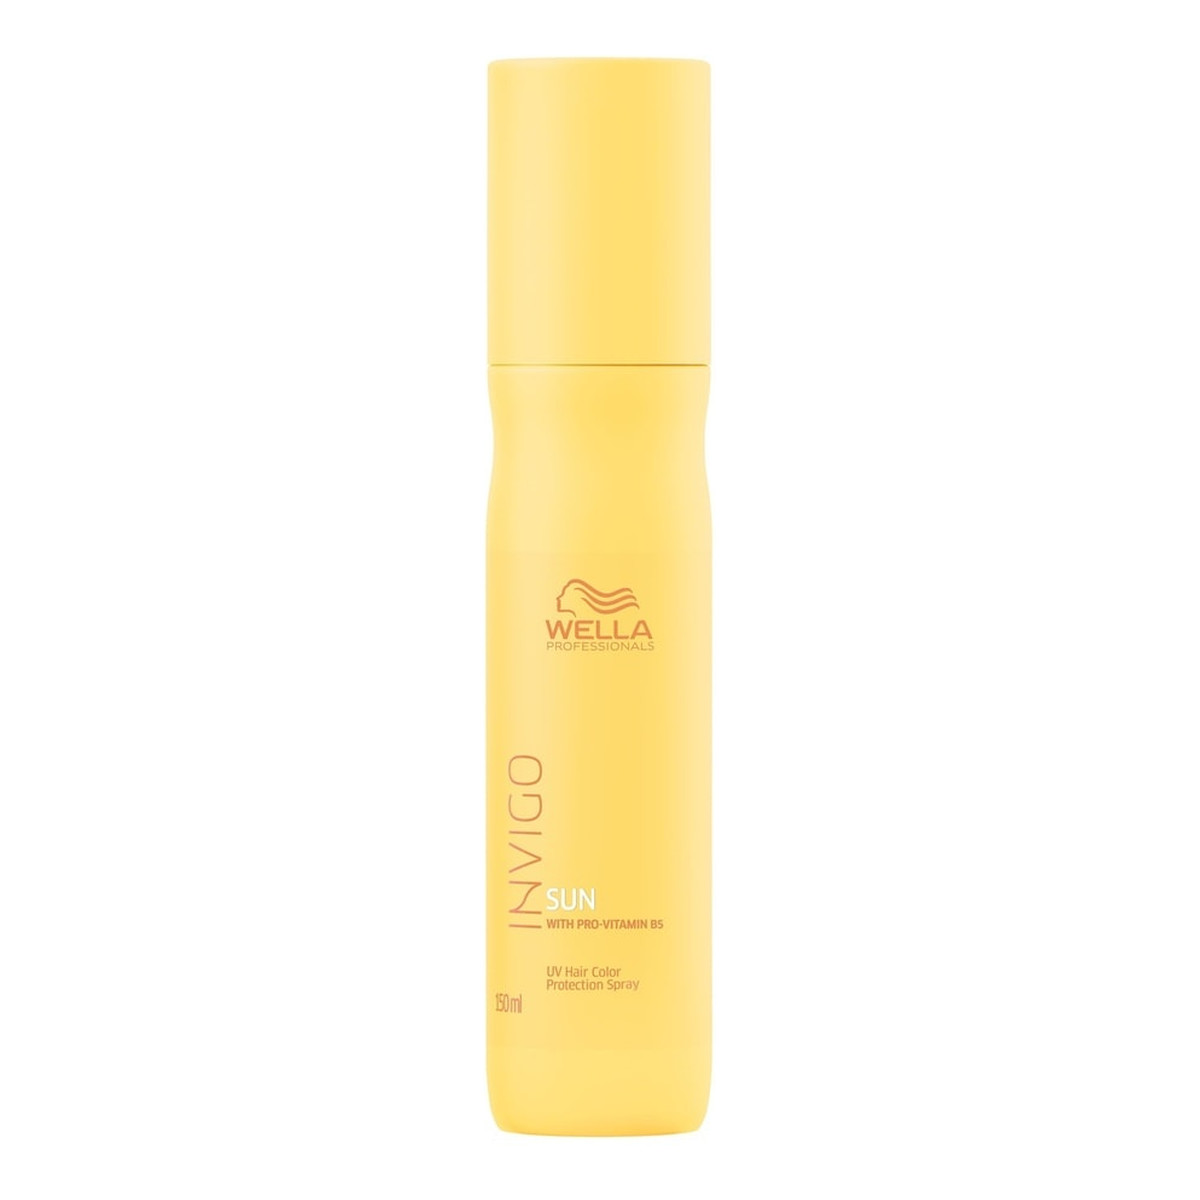 Wella Professionals Invigo sun uv hair color protection spray odżywka w spray'u do włosów chroniąca przed promieniami uv 150ml